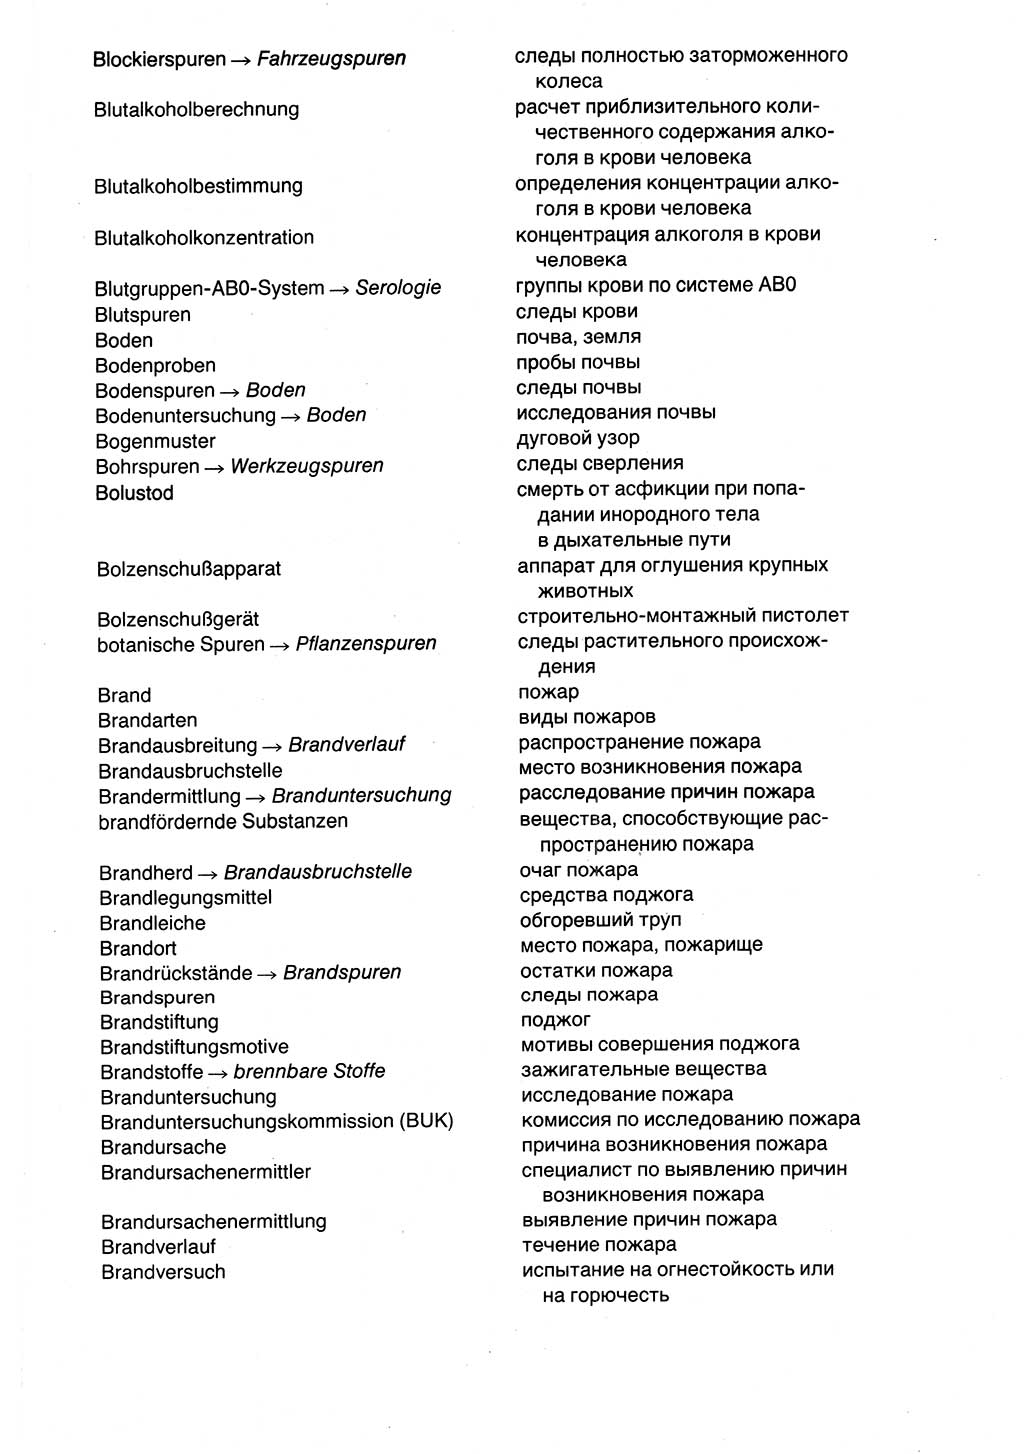 Wörterbuch der sozialistischen Kriminalistik [Deutsche Demokratische Republik (DDR)] 1981, Seite 595 (Wb. soz. Krim. DDR 1981, S. 595)